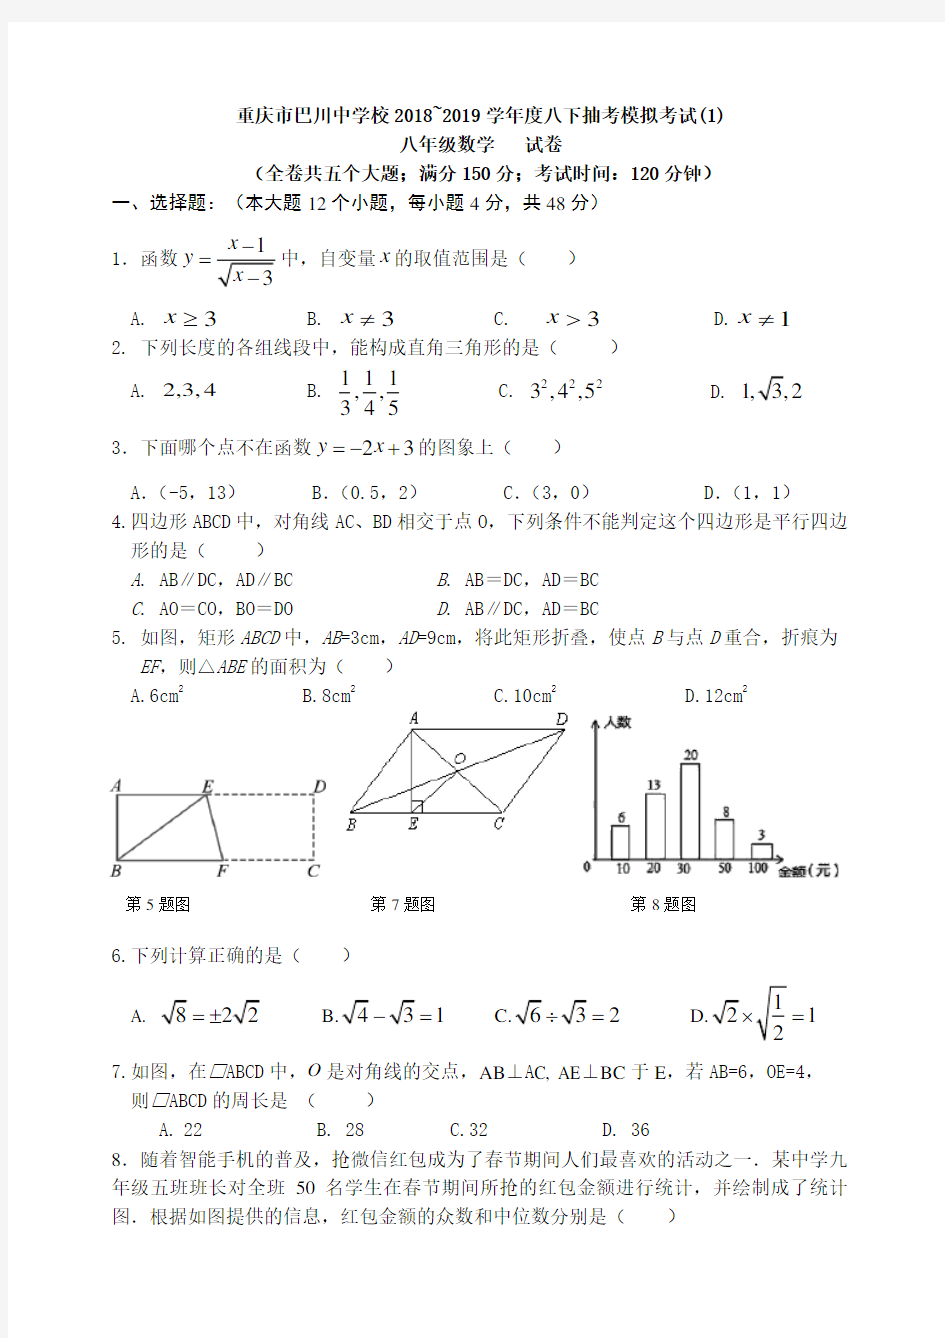 重庆市巴川中学校2018-2019学年八年级下期末数学抽考模拟试题共3套( 答案不全)